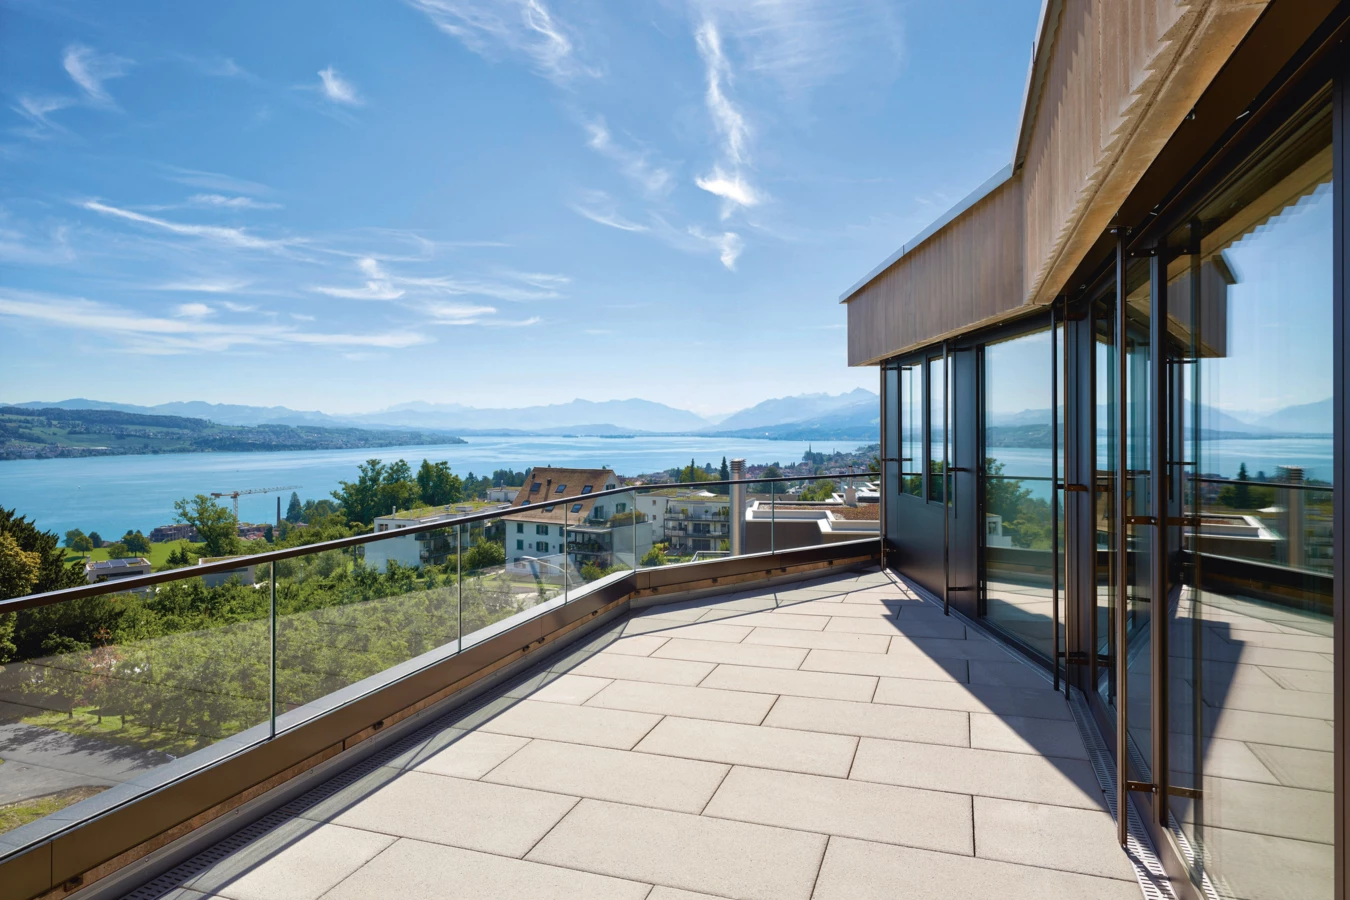 Raum zum Träumen und Entspannen – der Blick auf den Zürichsee lässt den Alltag schnell verstummen.